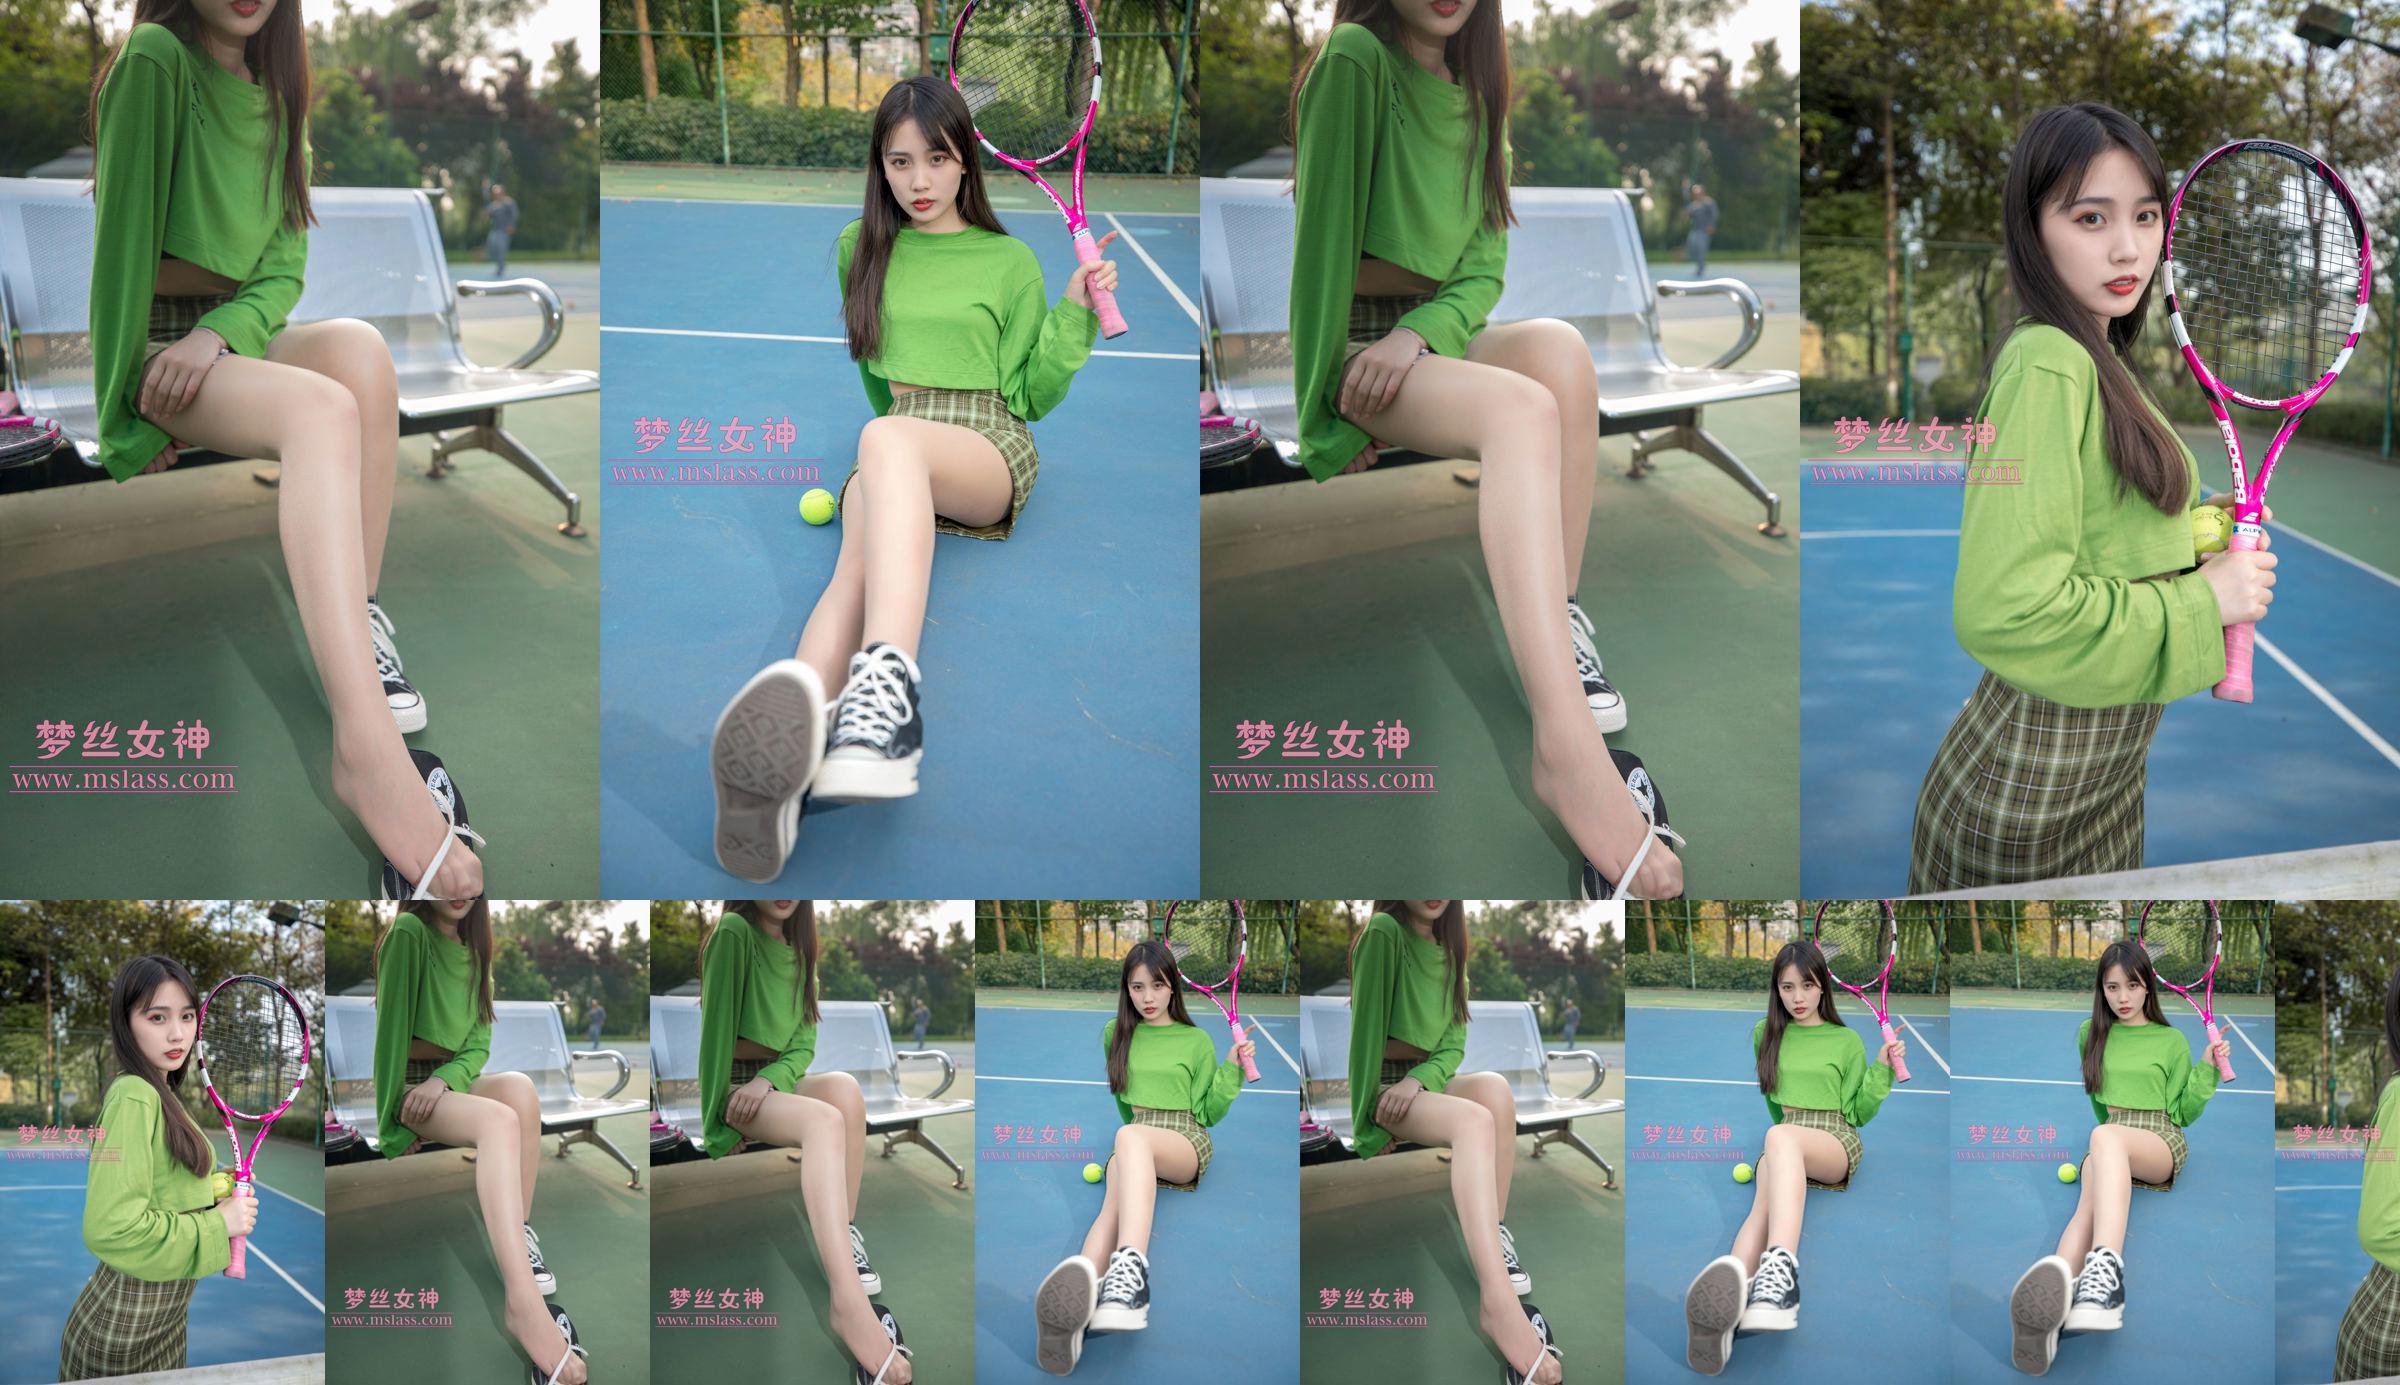 [Diosa de los sueños MSLASS] Chica del tenis Xiang Xuan No.5328a2 Página 29